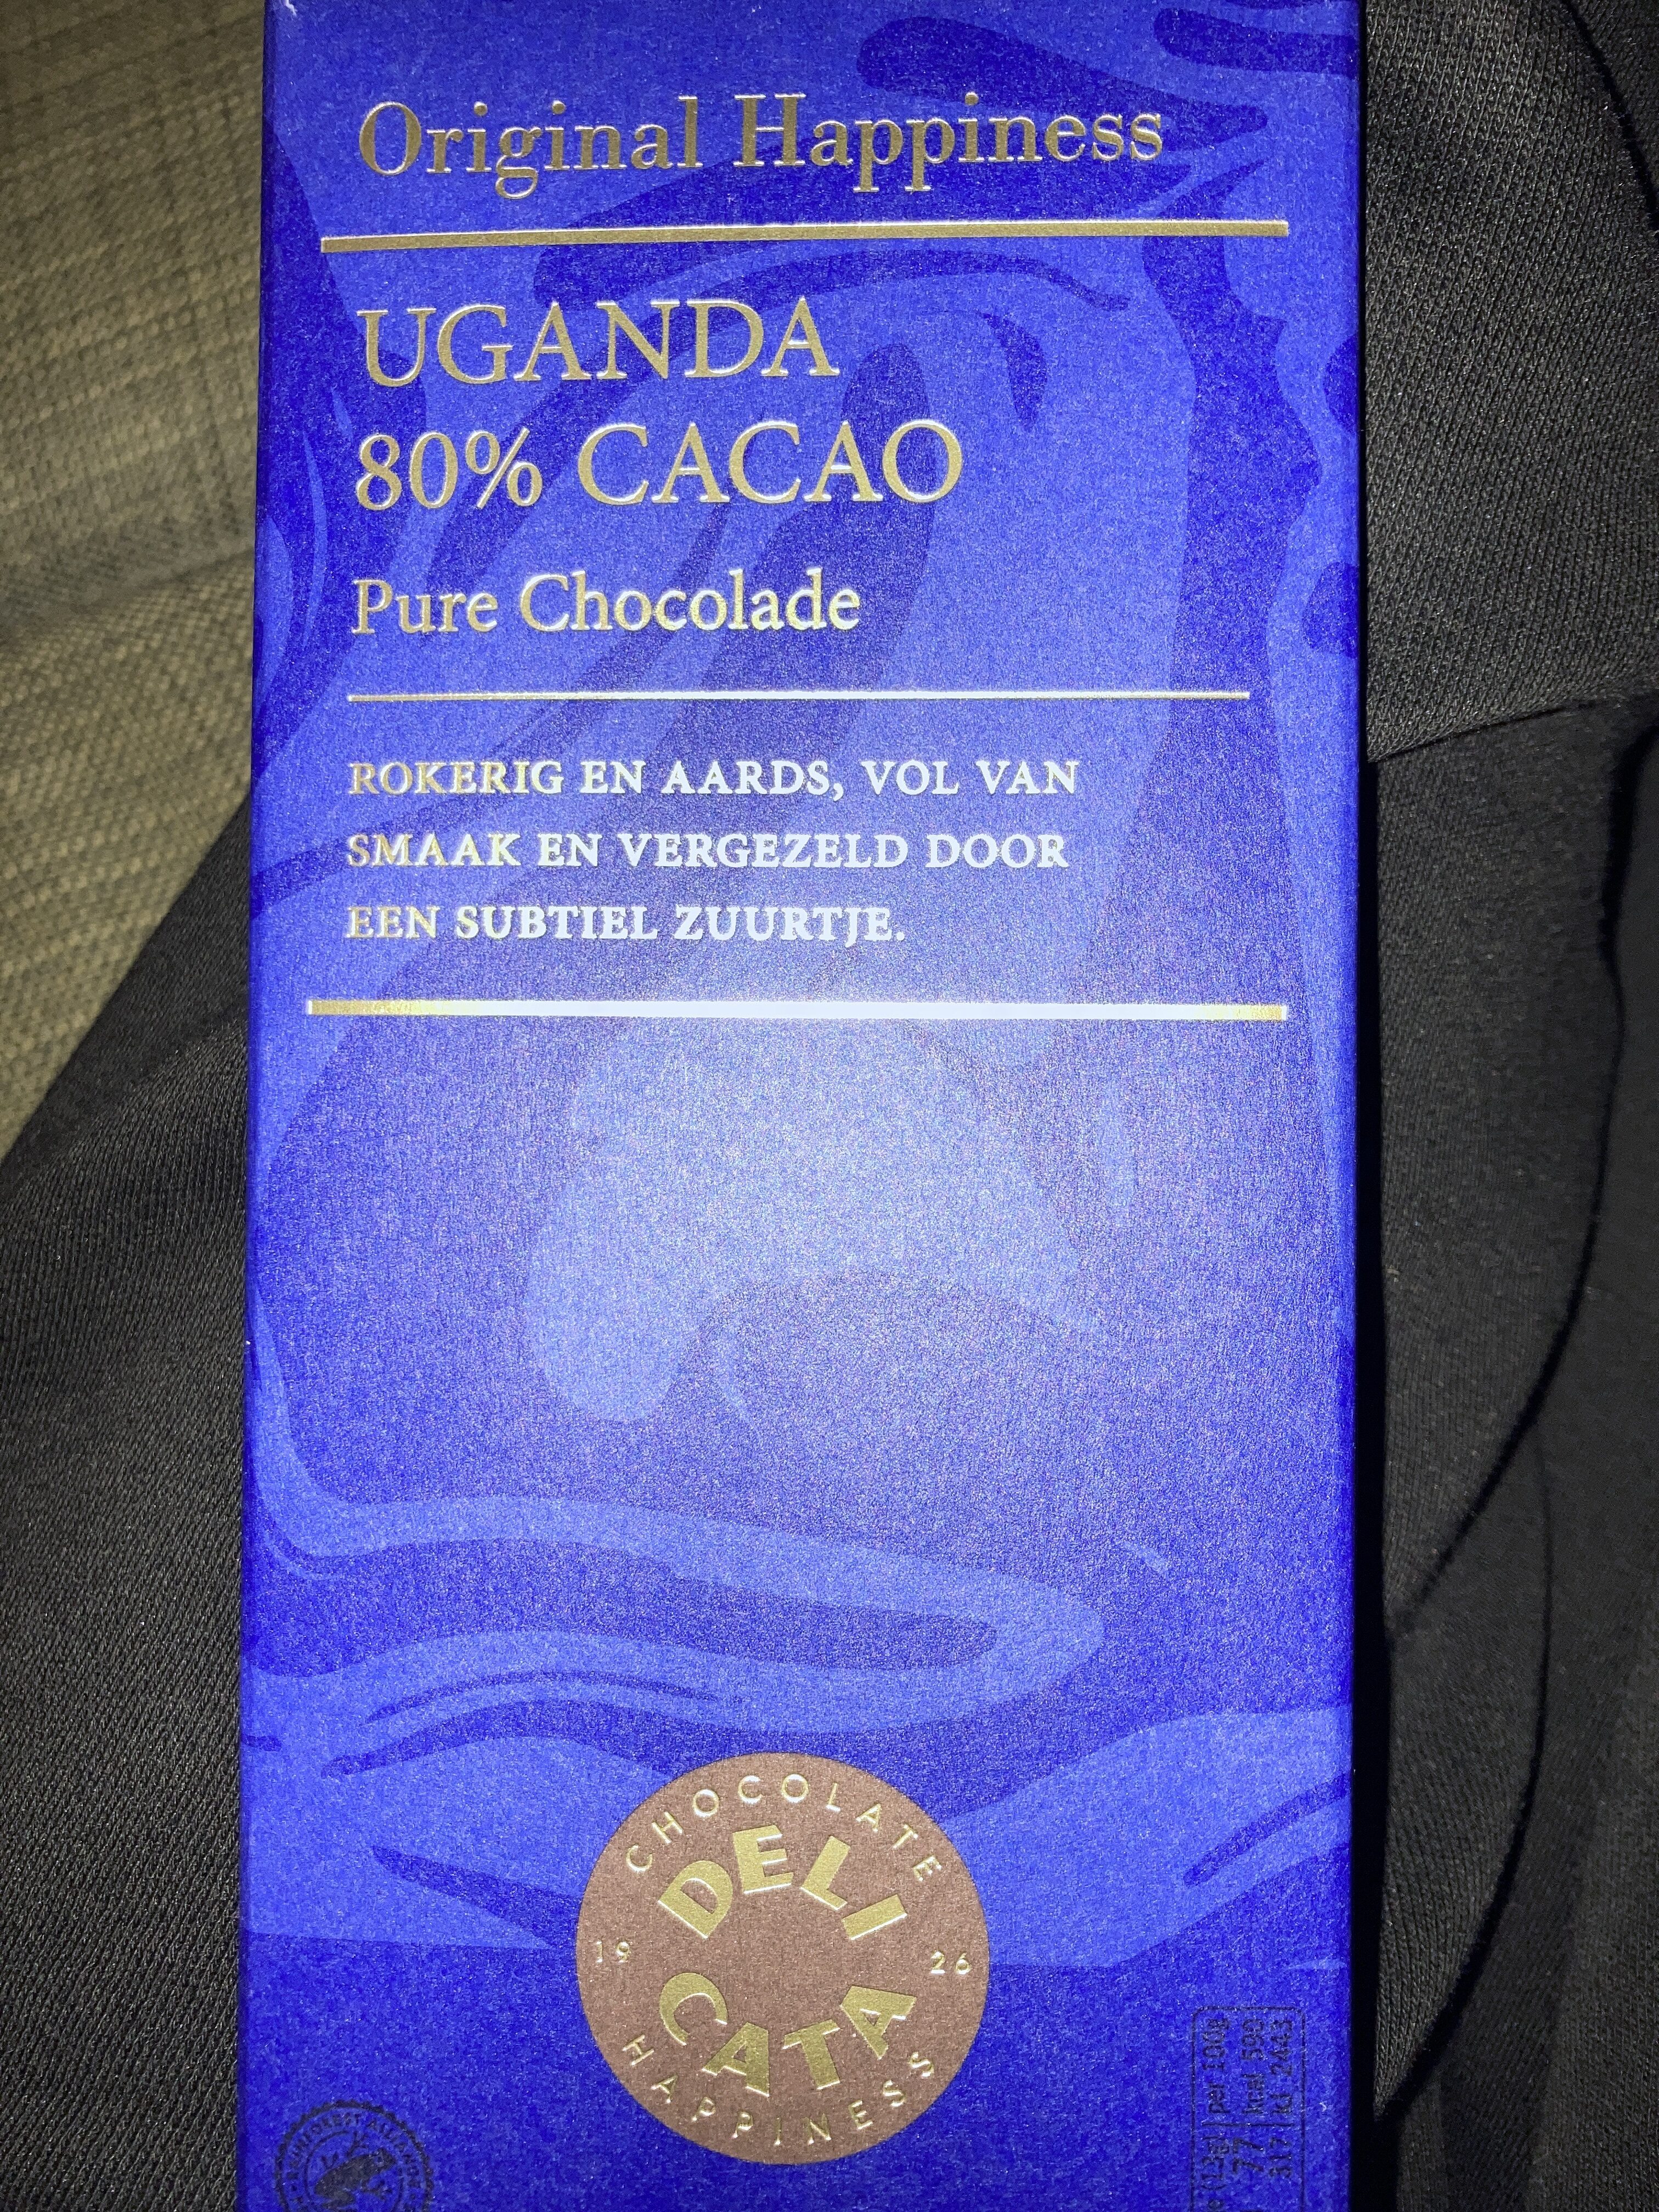 Uganda 80% cacao - Product